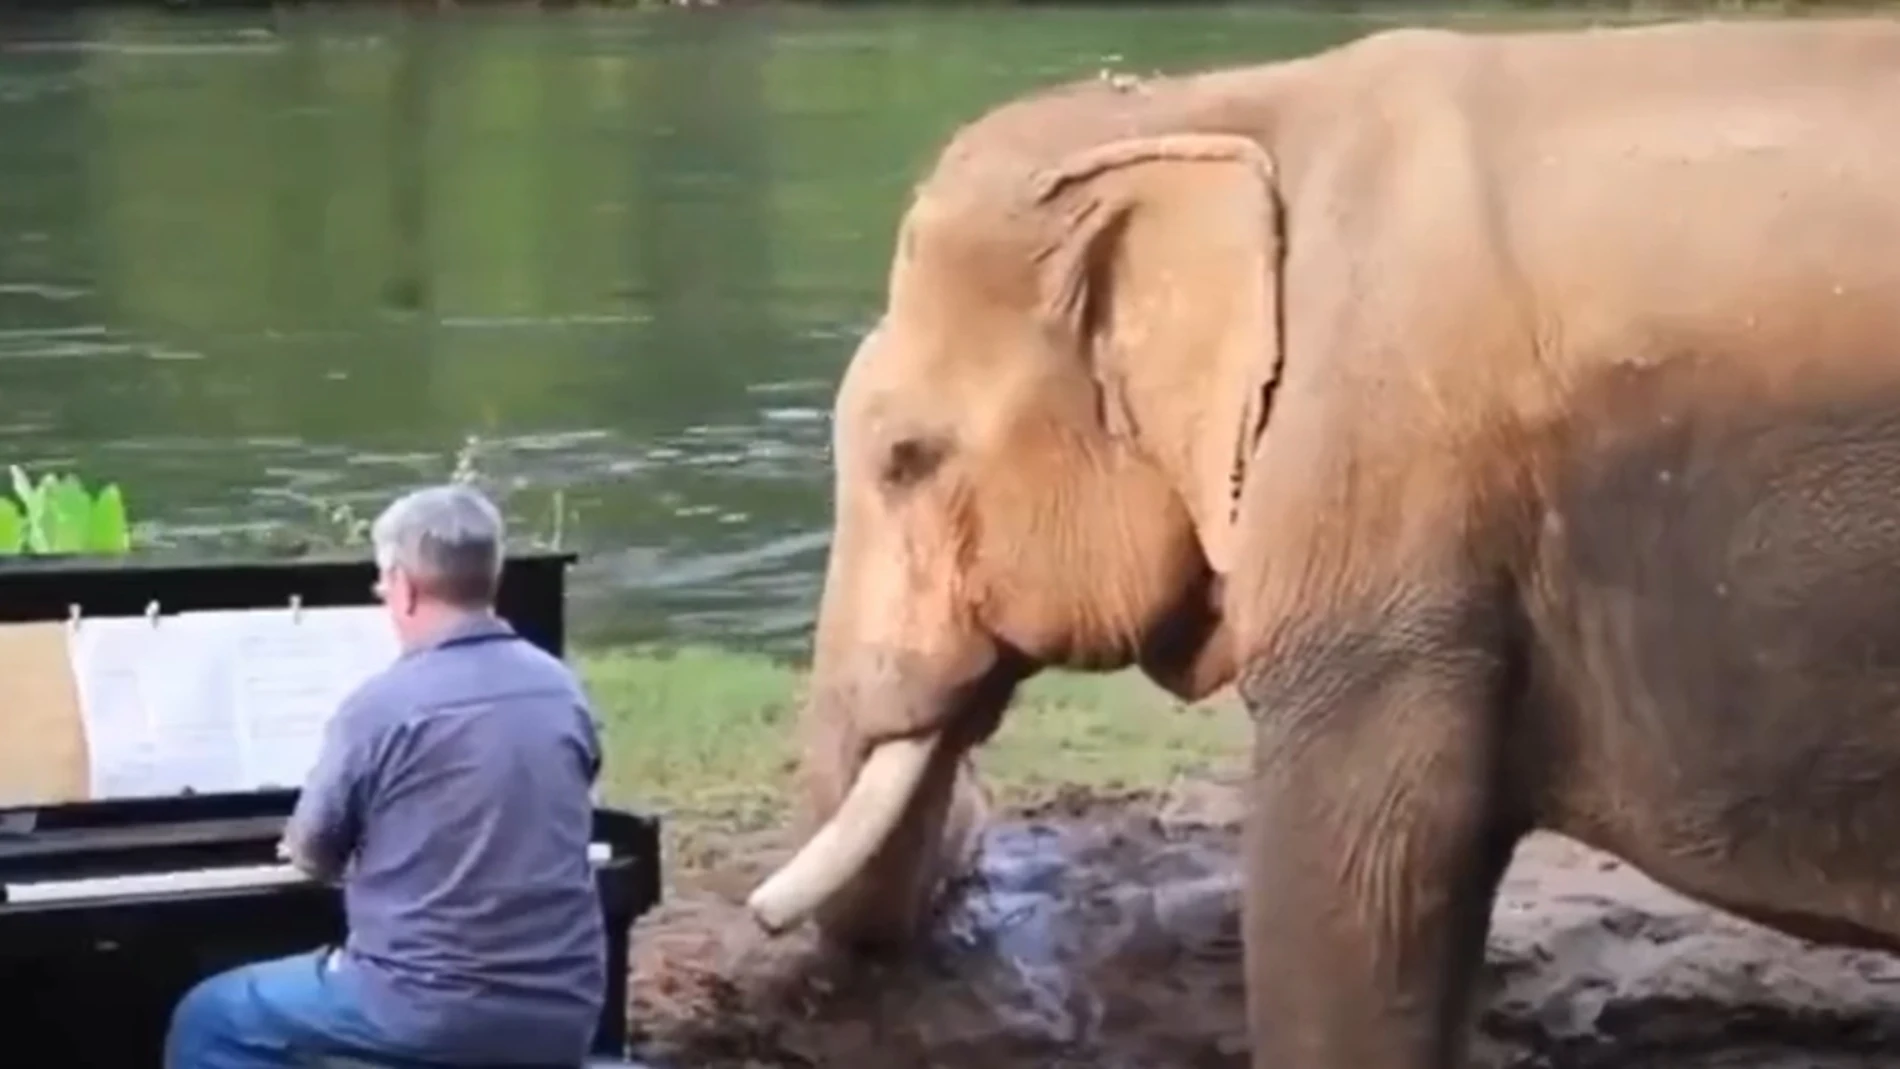 Paul Barton toca el piano para un elefante ciego en Tailandia